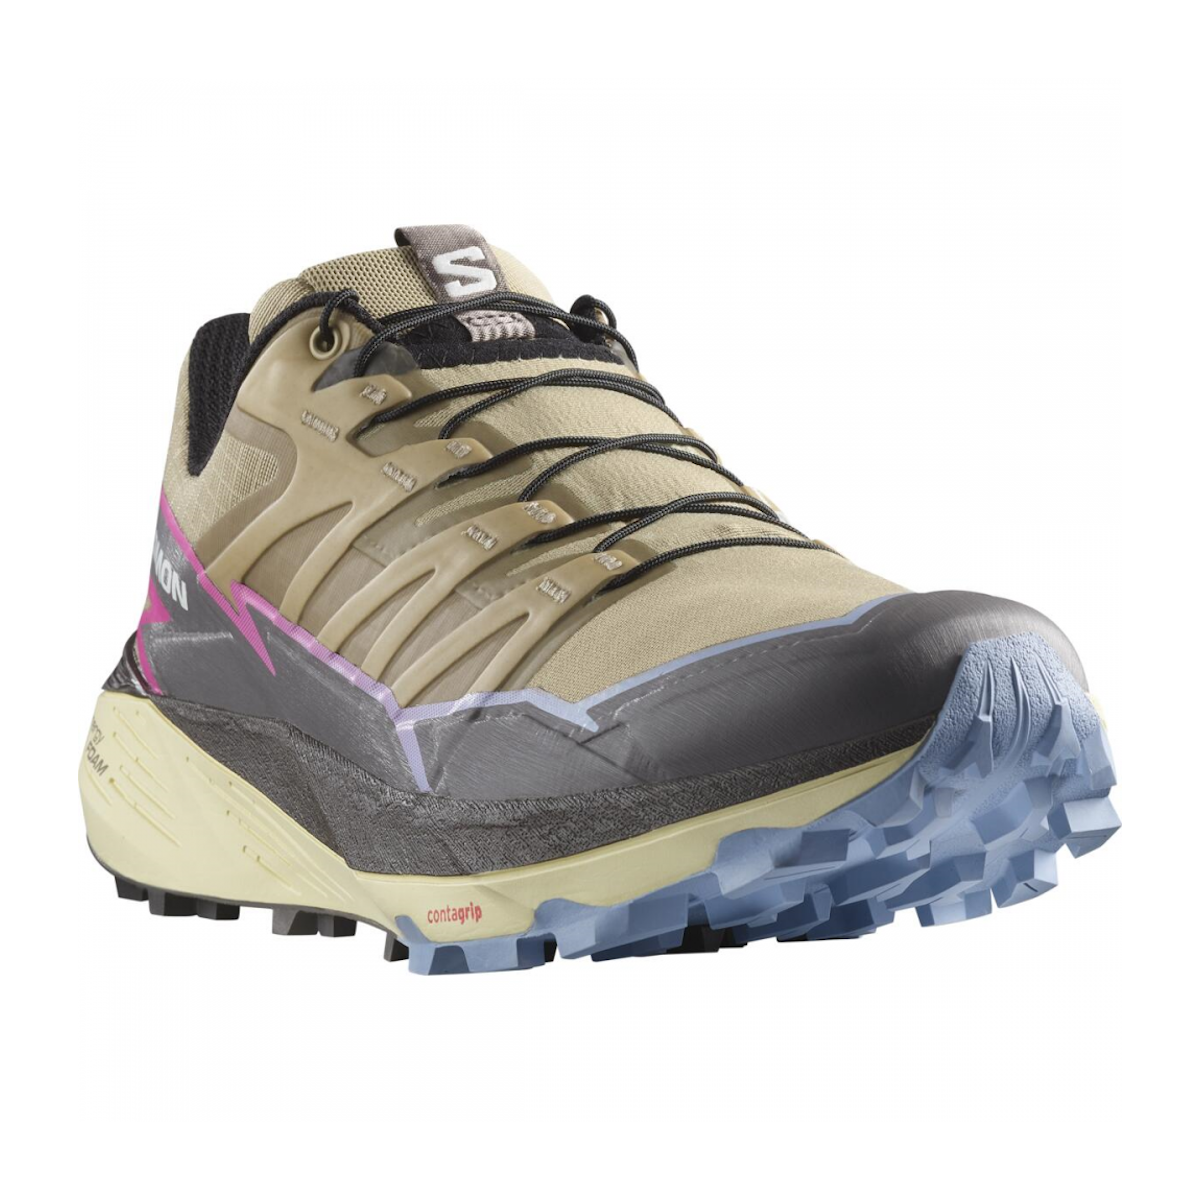 SALOMON THUNDERCROSS W trail running shoes - beige/brown/violet